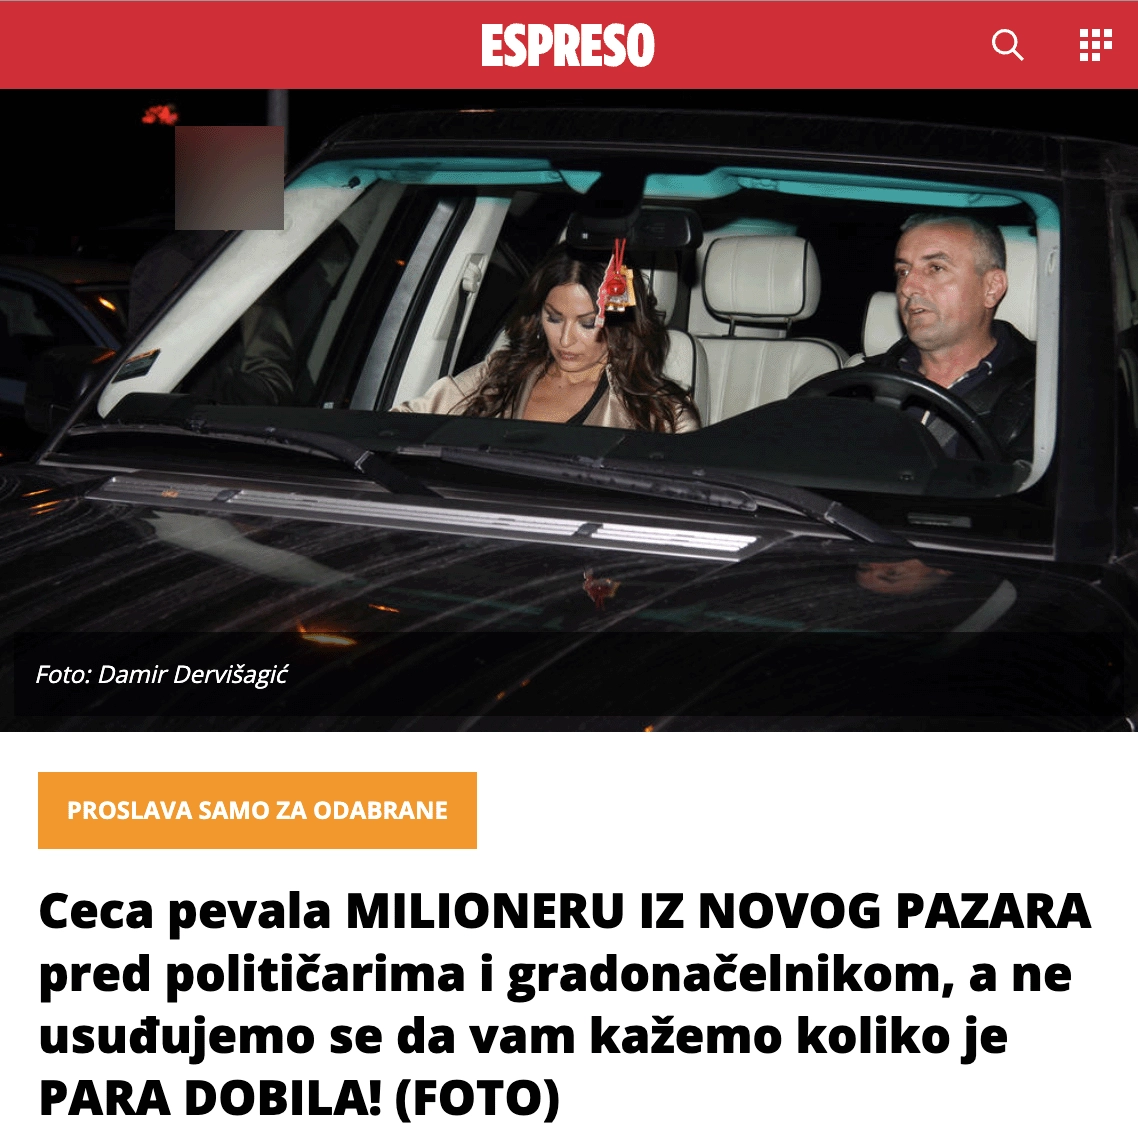 A 2018 article in Serbia's <em><a href='https://www.espreso.co.rs/showbiz/zvezde/249889/ceca-pevala-milioneru-iz-novog-pazara-pred-politicarima-i-gradonacelnikom-a-ne-usudjujemo-se-da-vam-kazemo-koliko-je-para-dobila-foto' target='_blank'>Espreso</a></em> shows Mile Dragutinović with Svetlana Ražnatović (Ceca), Arkan's widow.